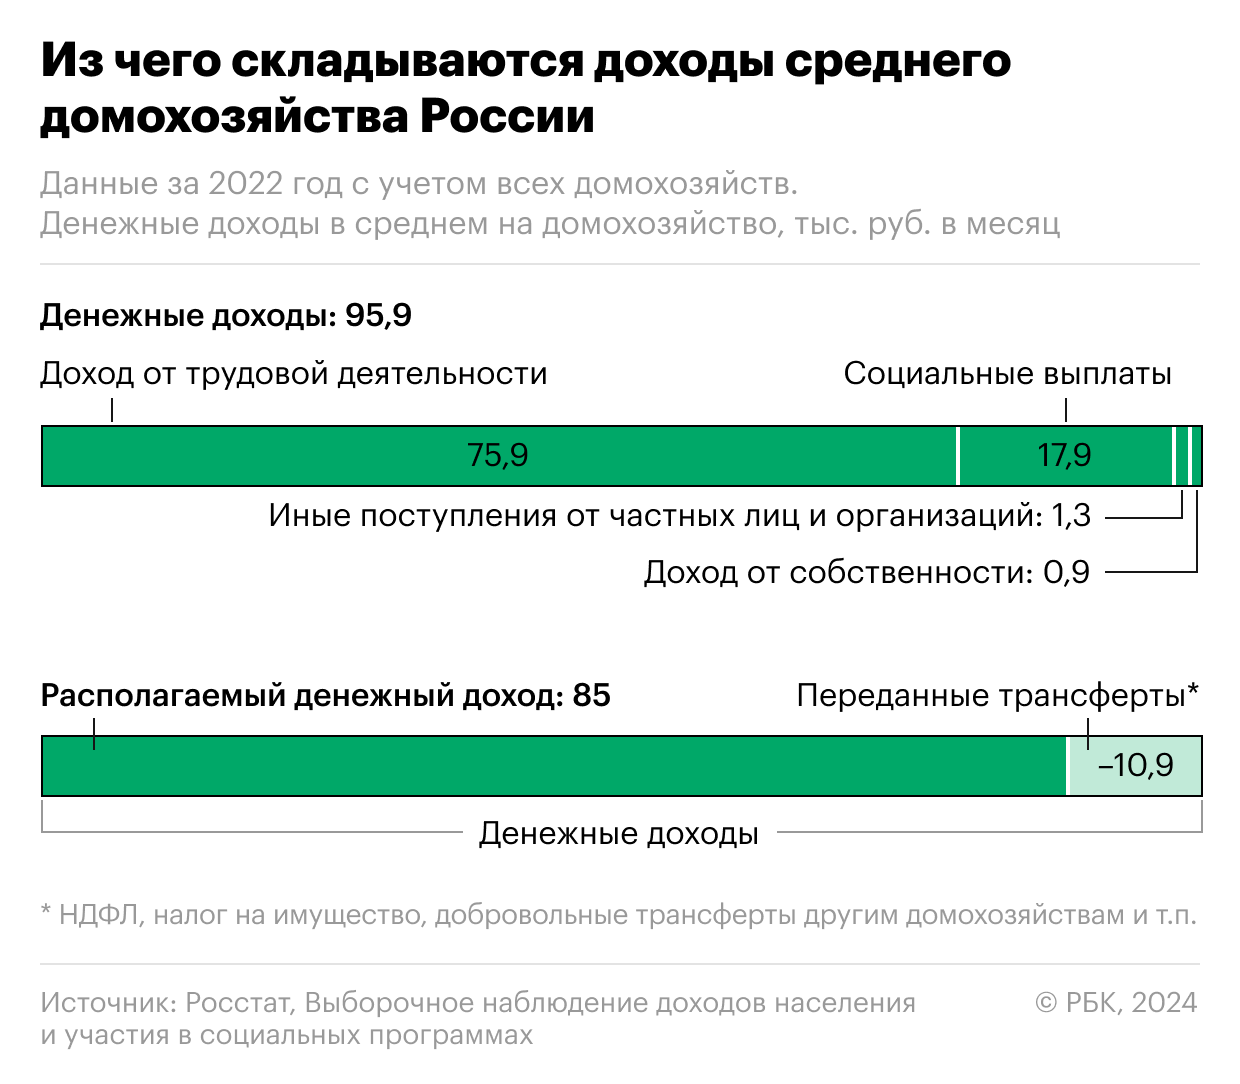 Из чего складывается доход обычной семьи в России. Инфографика